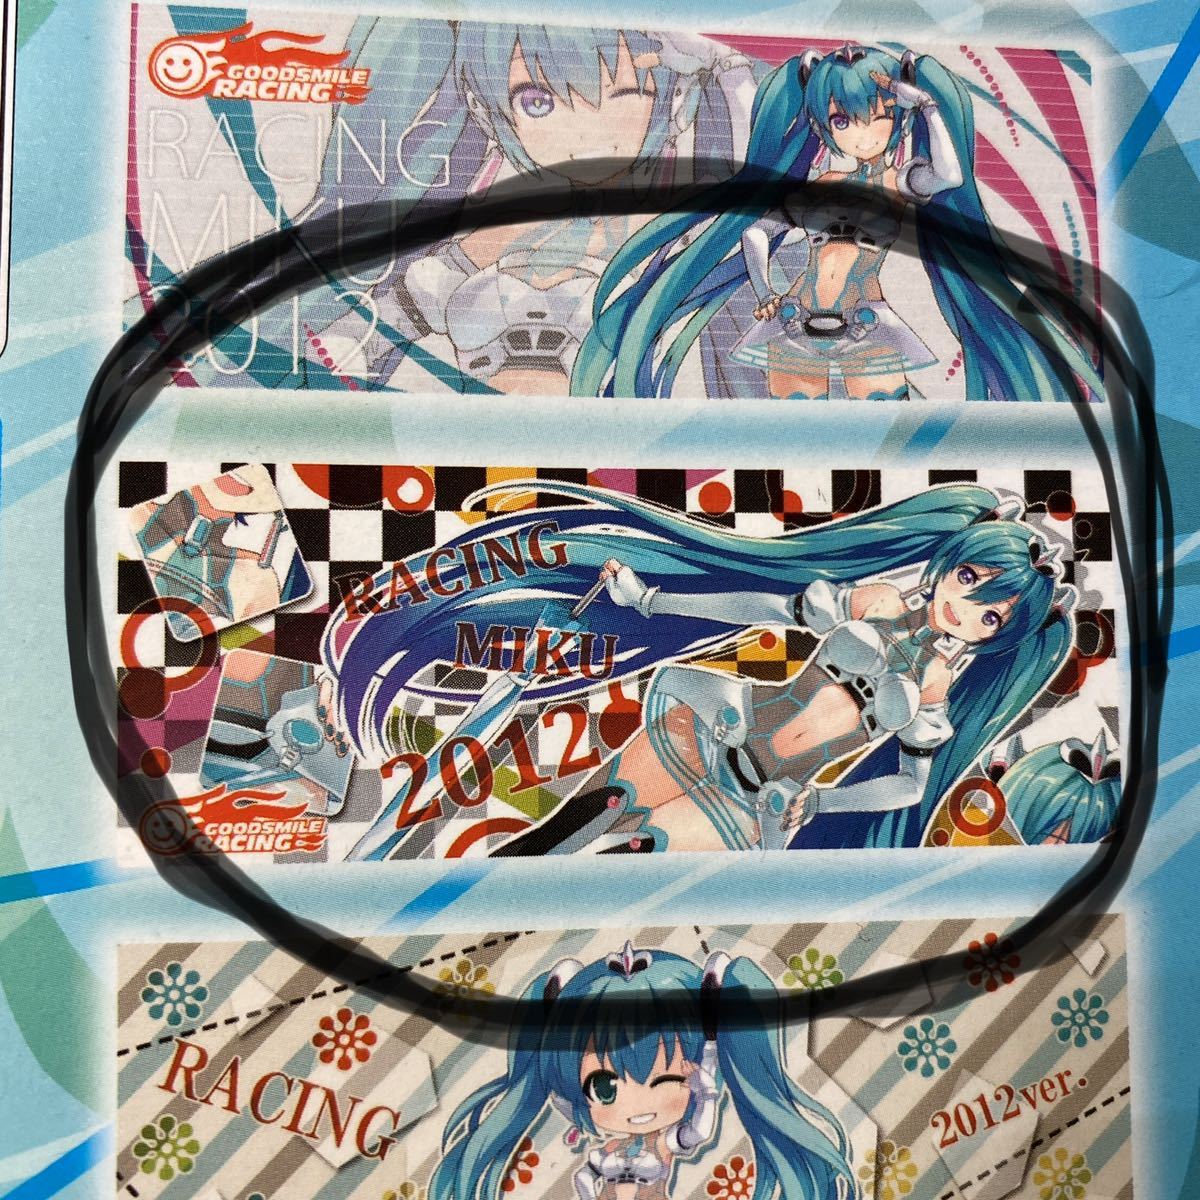  редкость не продается # не использовался #SUPER GT300gdo Smile рейсинг # рейсинг Miku 2012# микроволокно полотенце # Hatsune Miku 